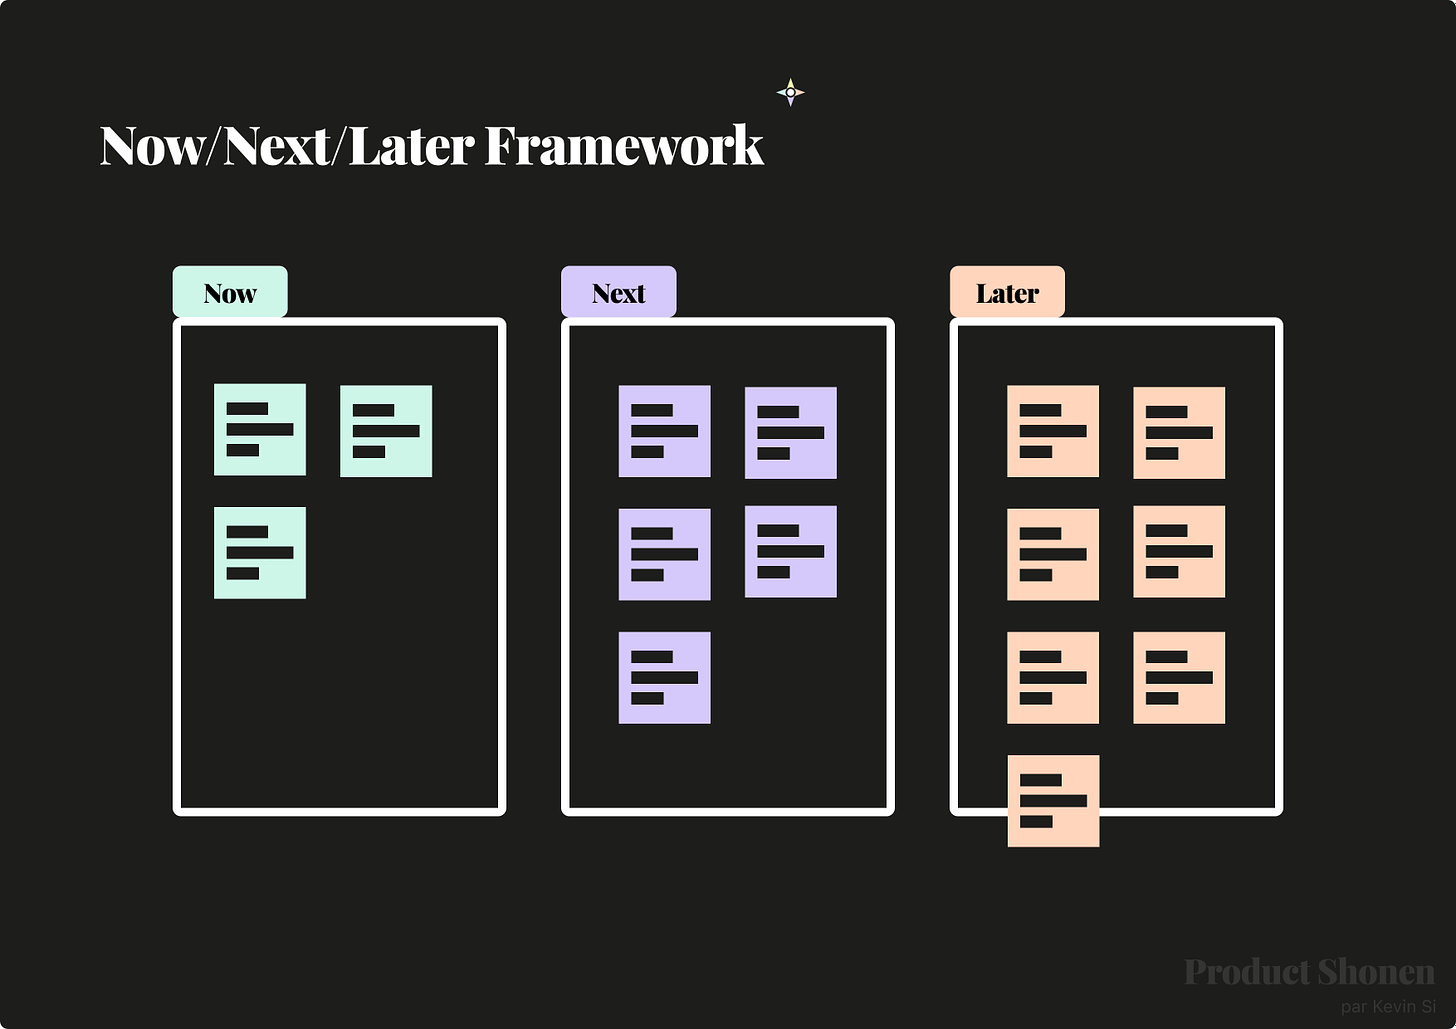 Le framework Now, Next, Later pour créer sa roadmap - Product Shonen - Kevin SI